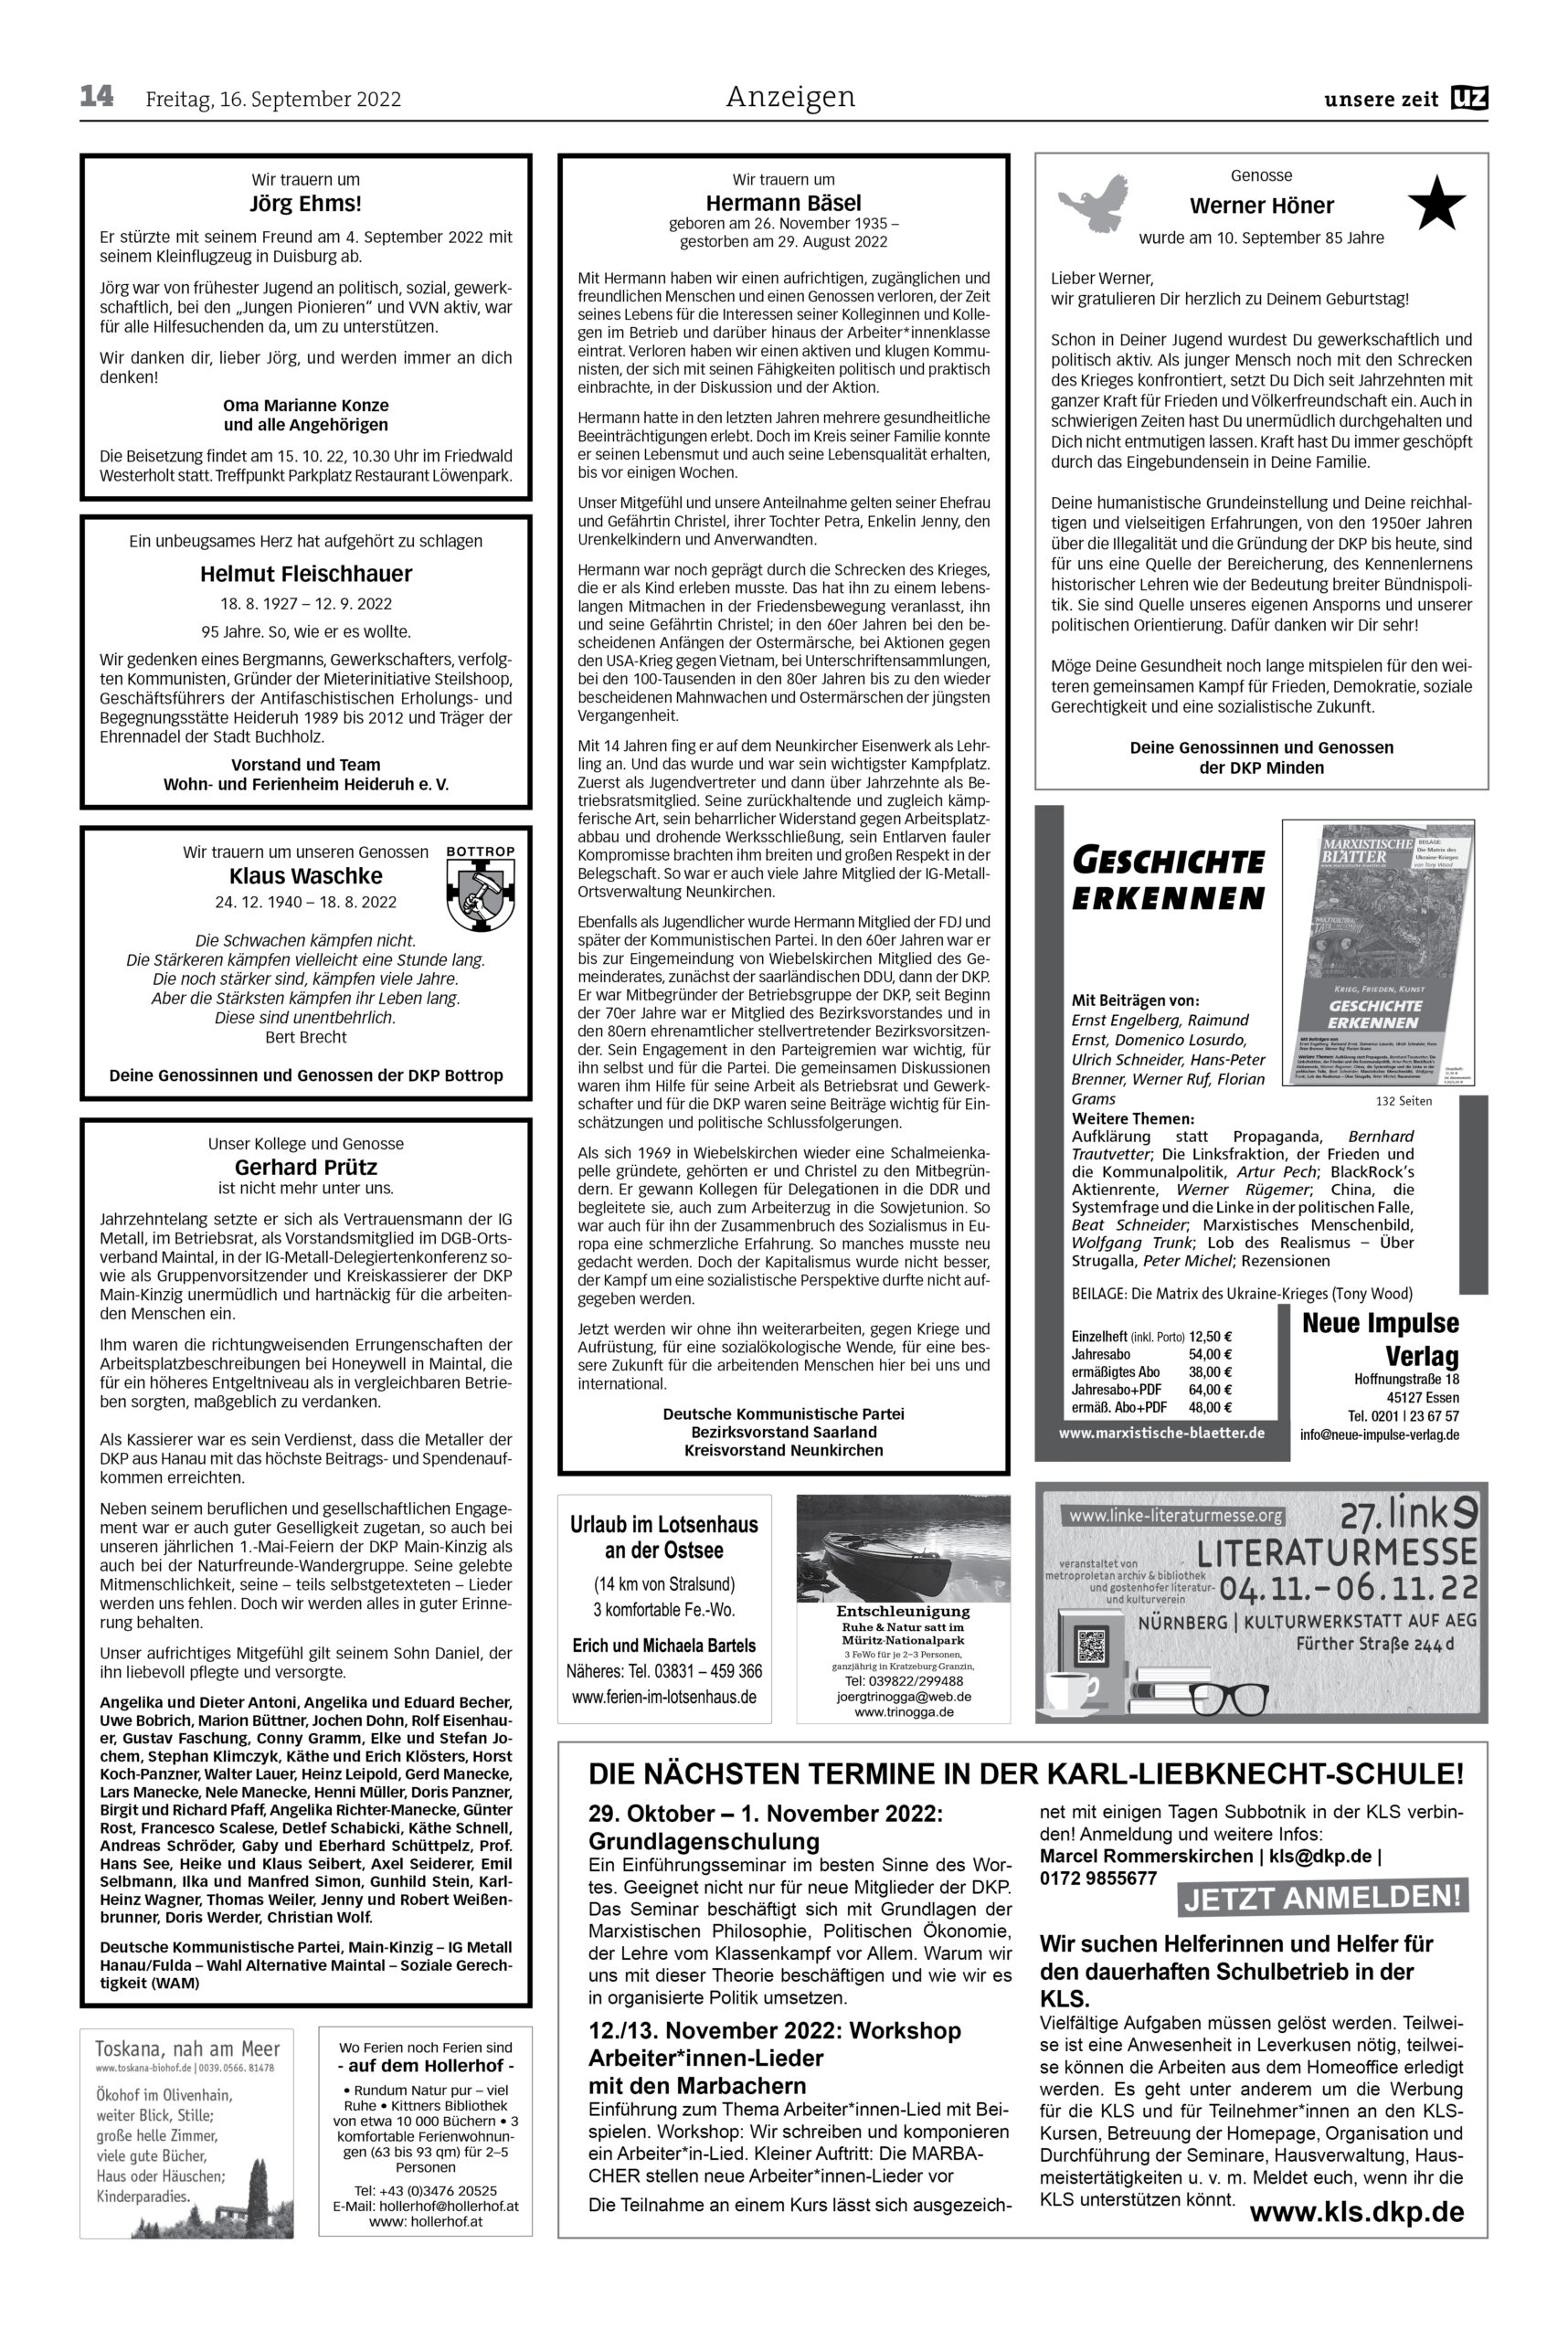 UZ 2022 36 Seite 14 scaled - Anzeigen 2022-36/37 - Anzeigen - Anzeigen